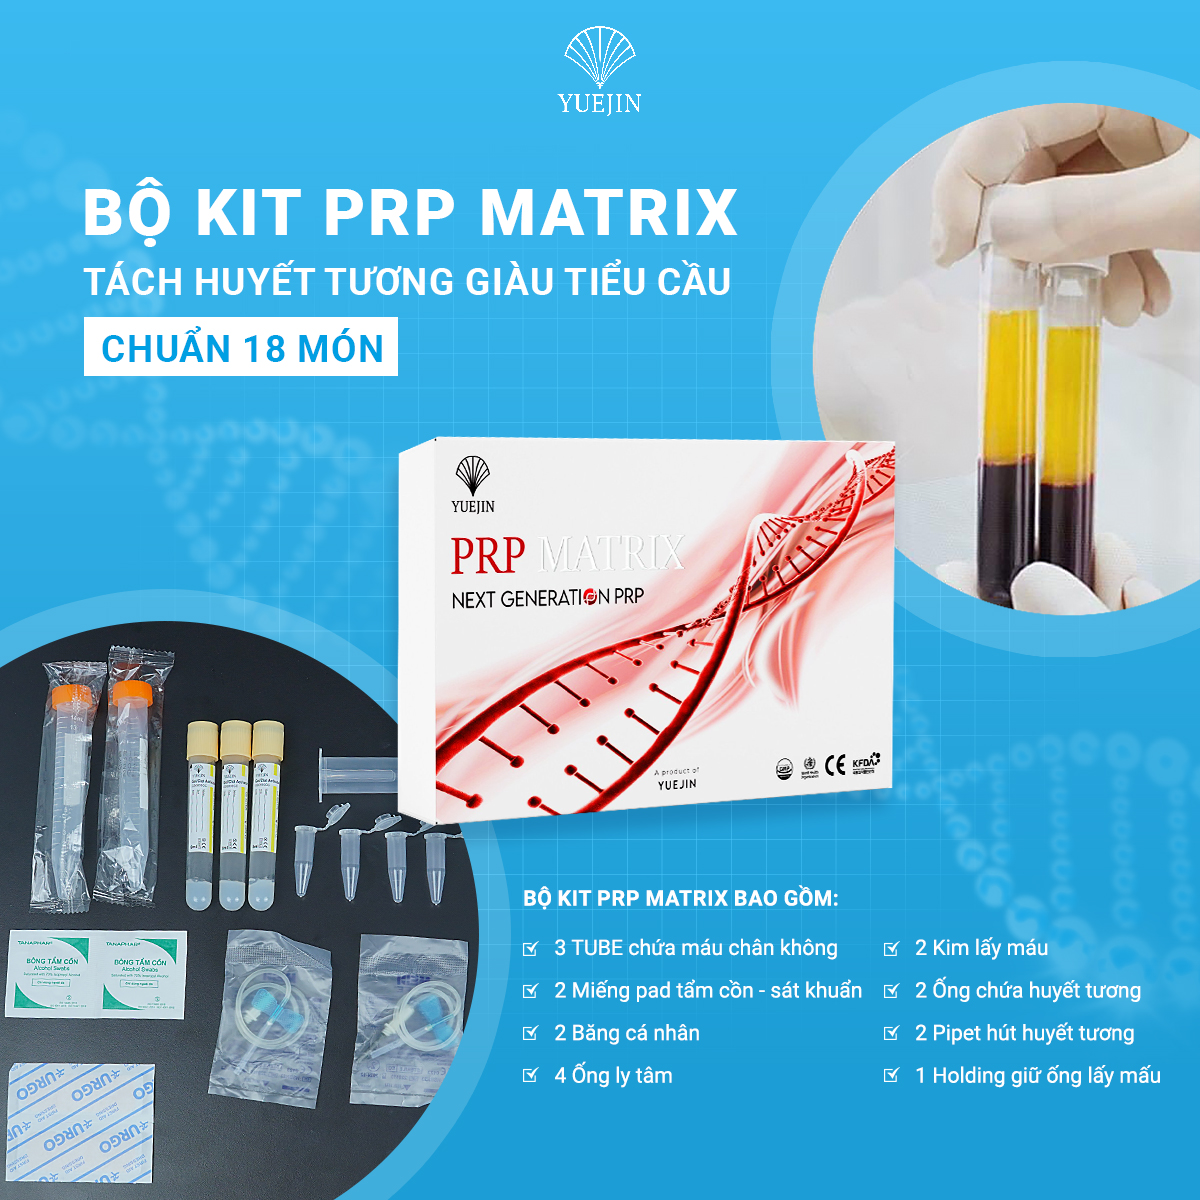 KIT PRP Matrix Yuejin - Bộ Kit tách huyết tương giàu tiểu cầu 18 món, có sẵn chất hoạt hóa (Hàng chuẩn công ty)